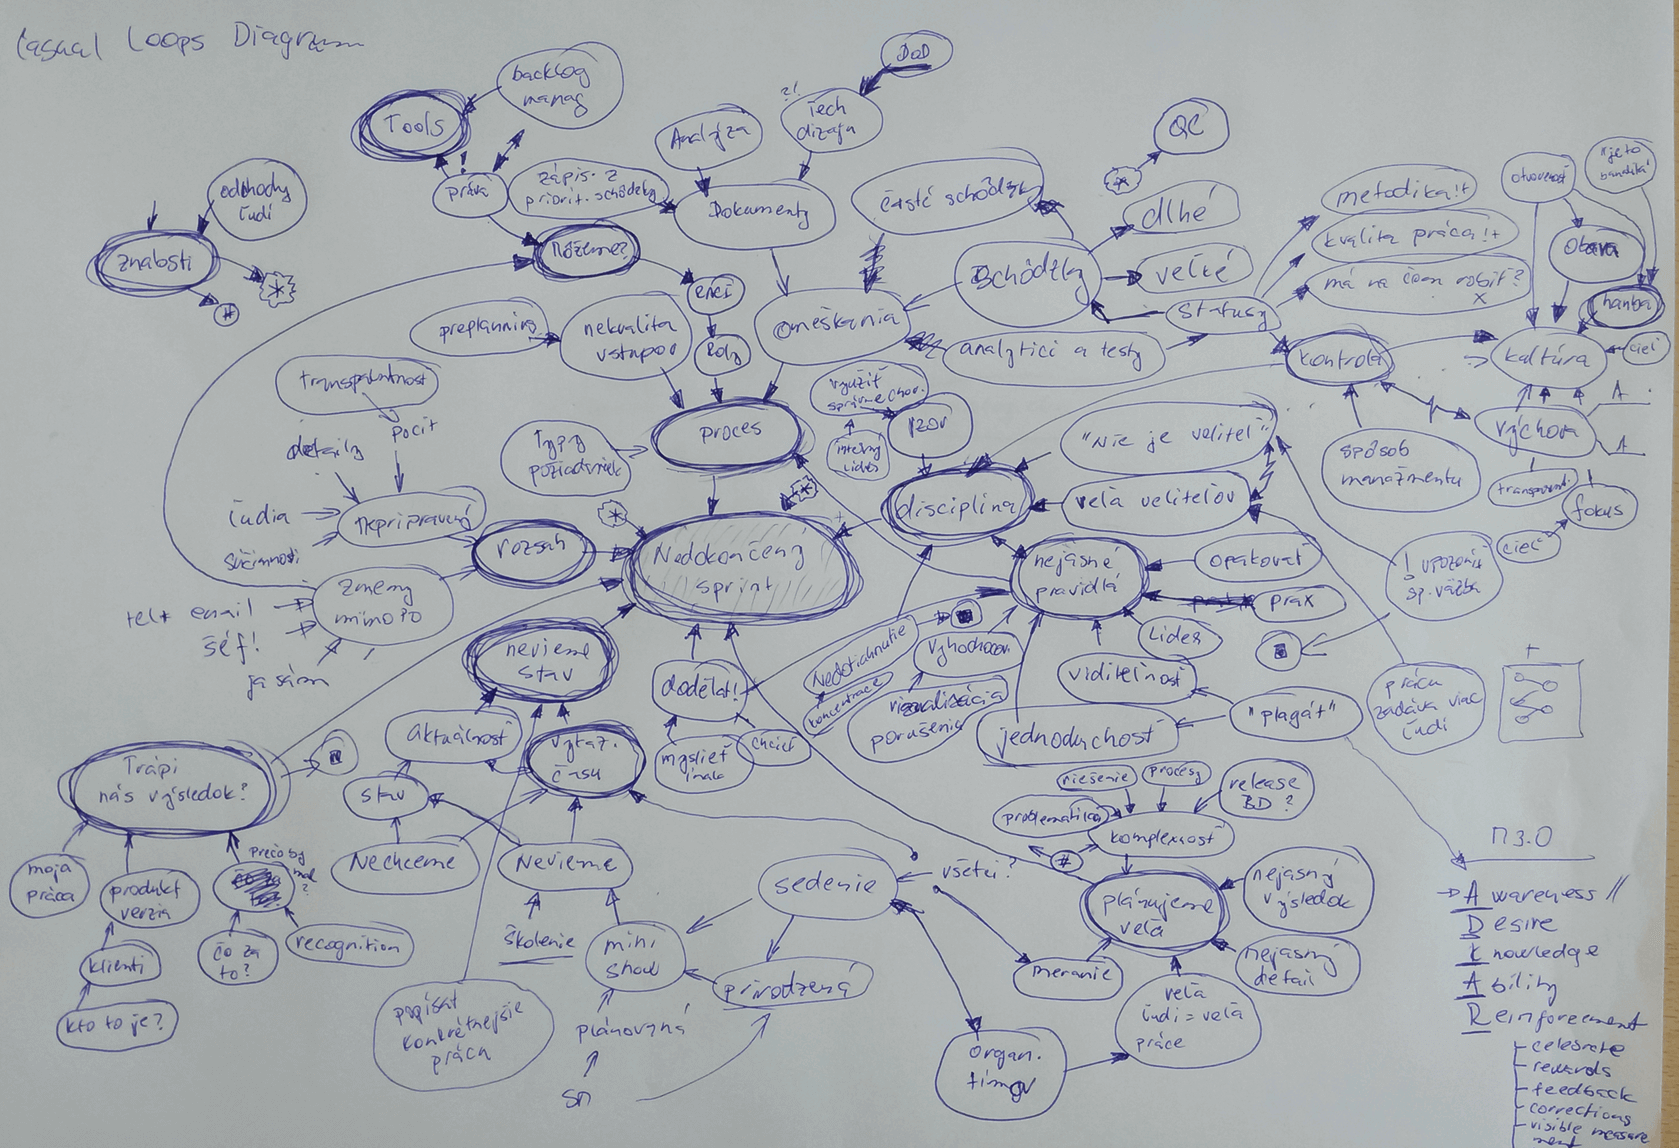 casual loops diagram